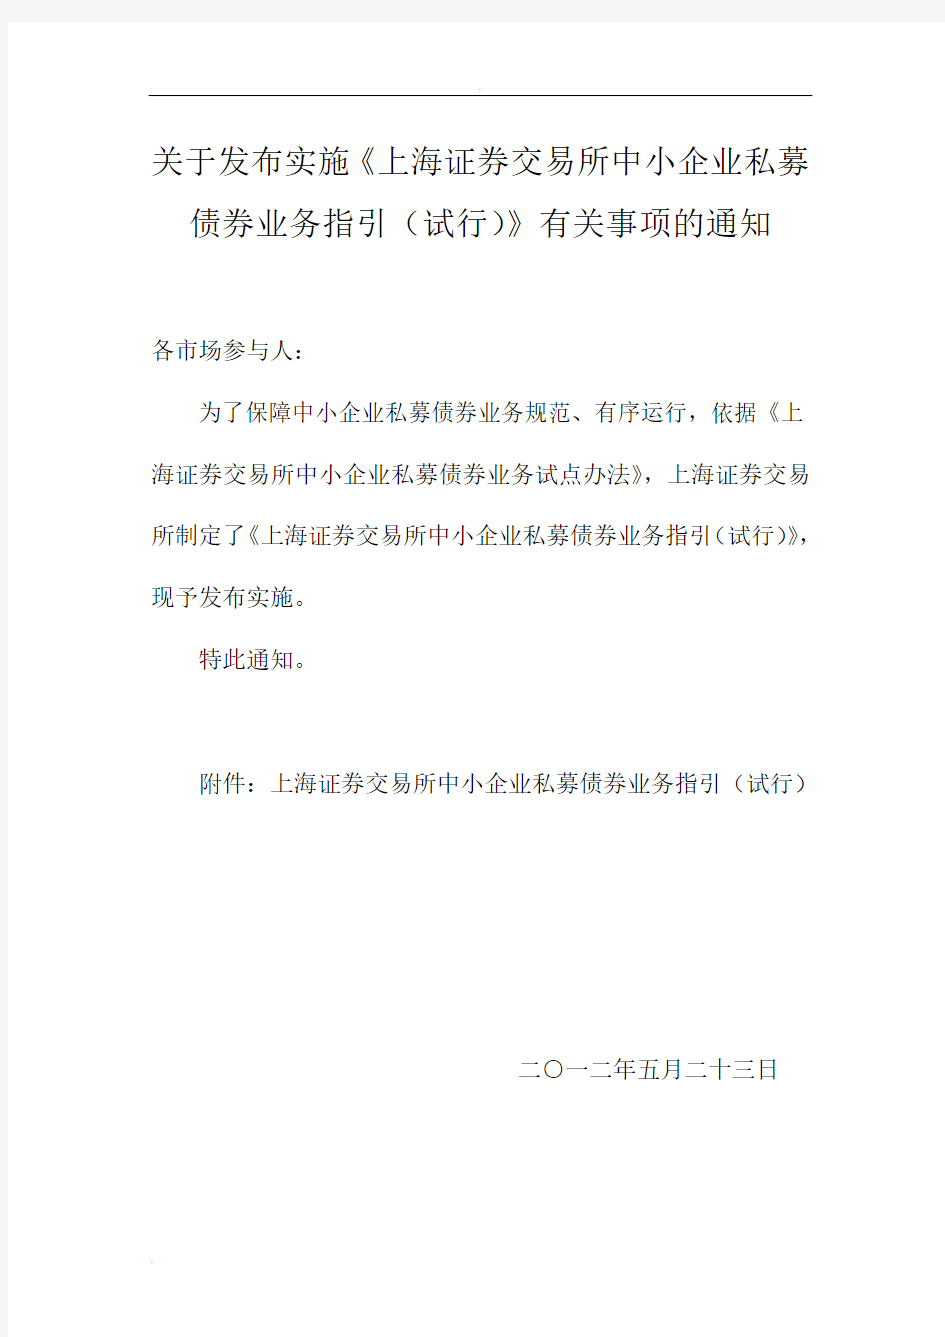 上海证券交易所中小企业私募债券业务指引